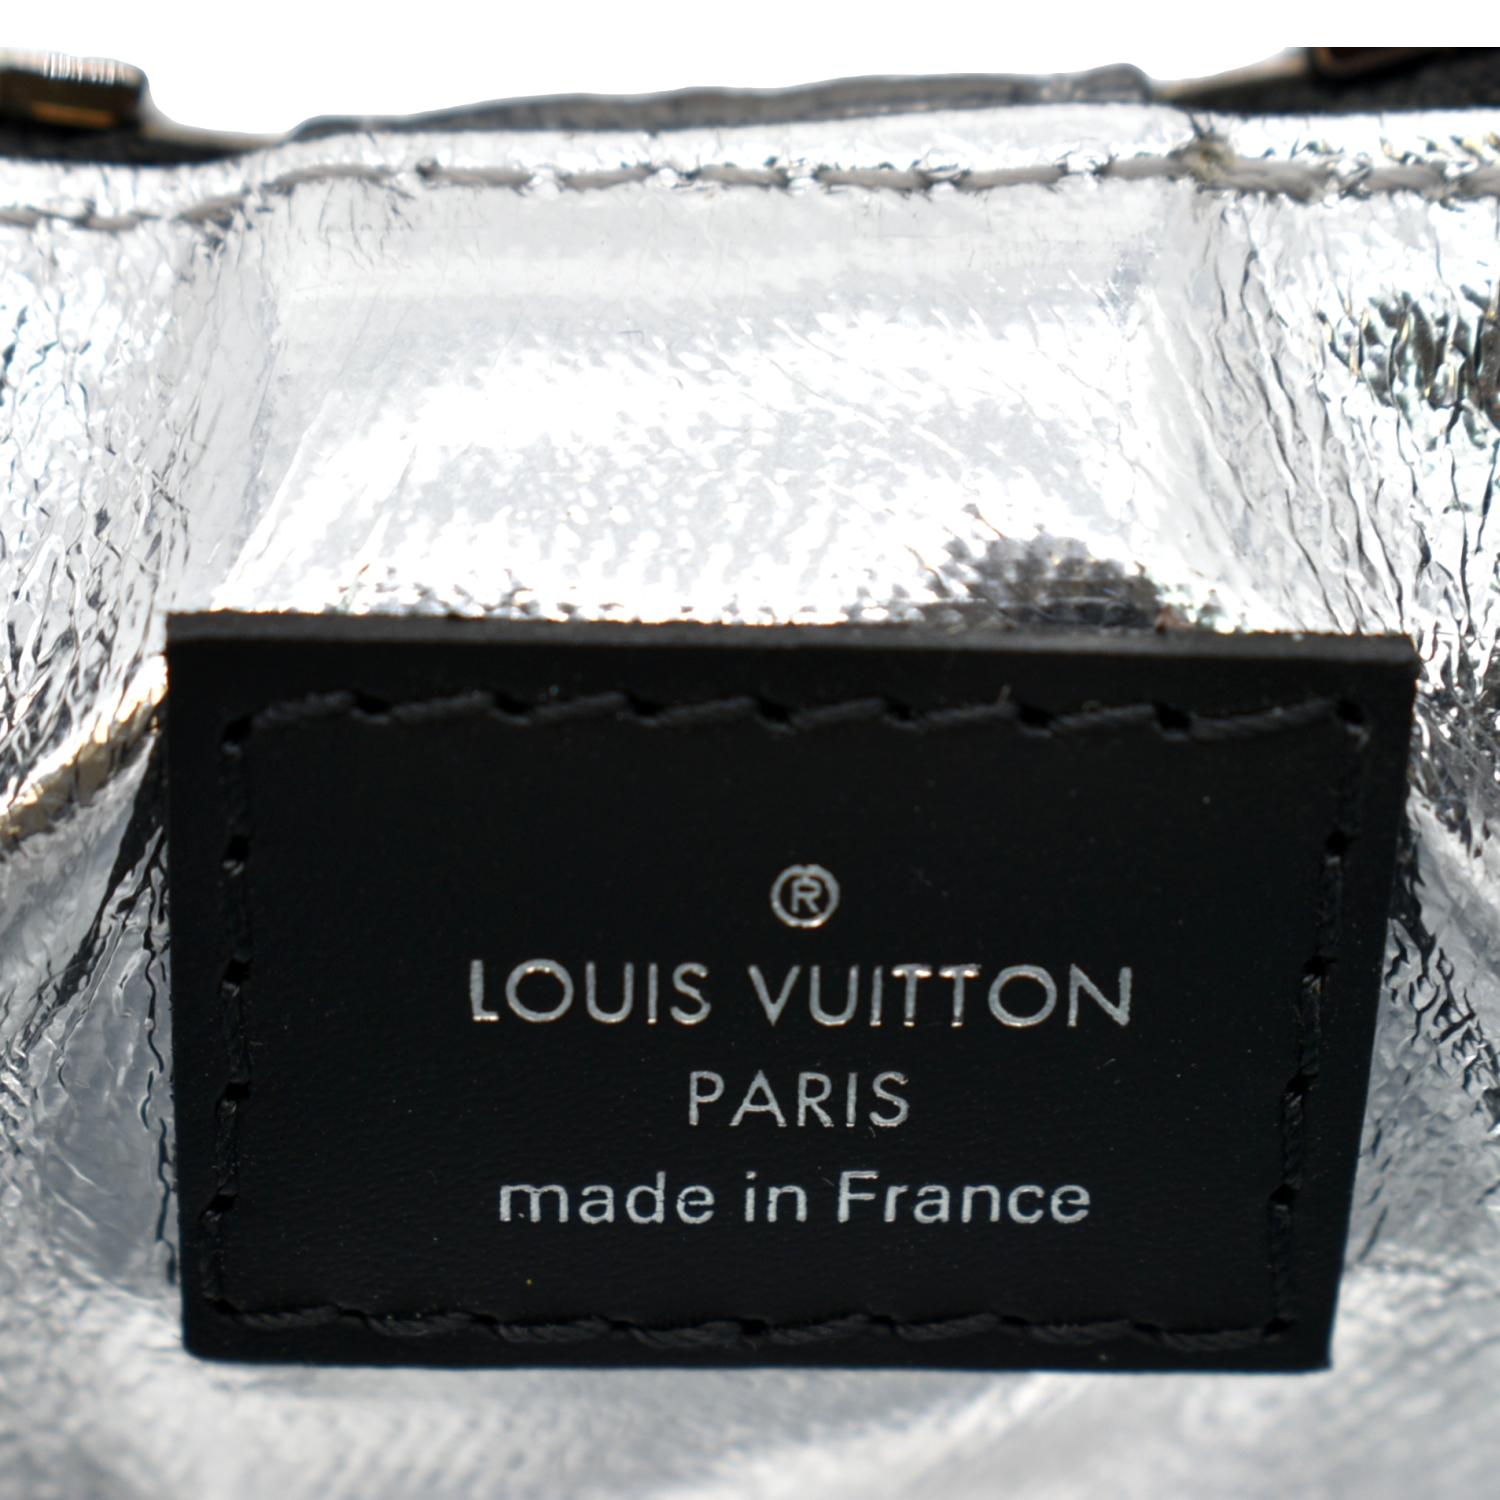 LOUIS VUITTON® Thermos  Flask holder, Louis vuitton, Handbag shopping